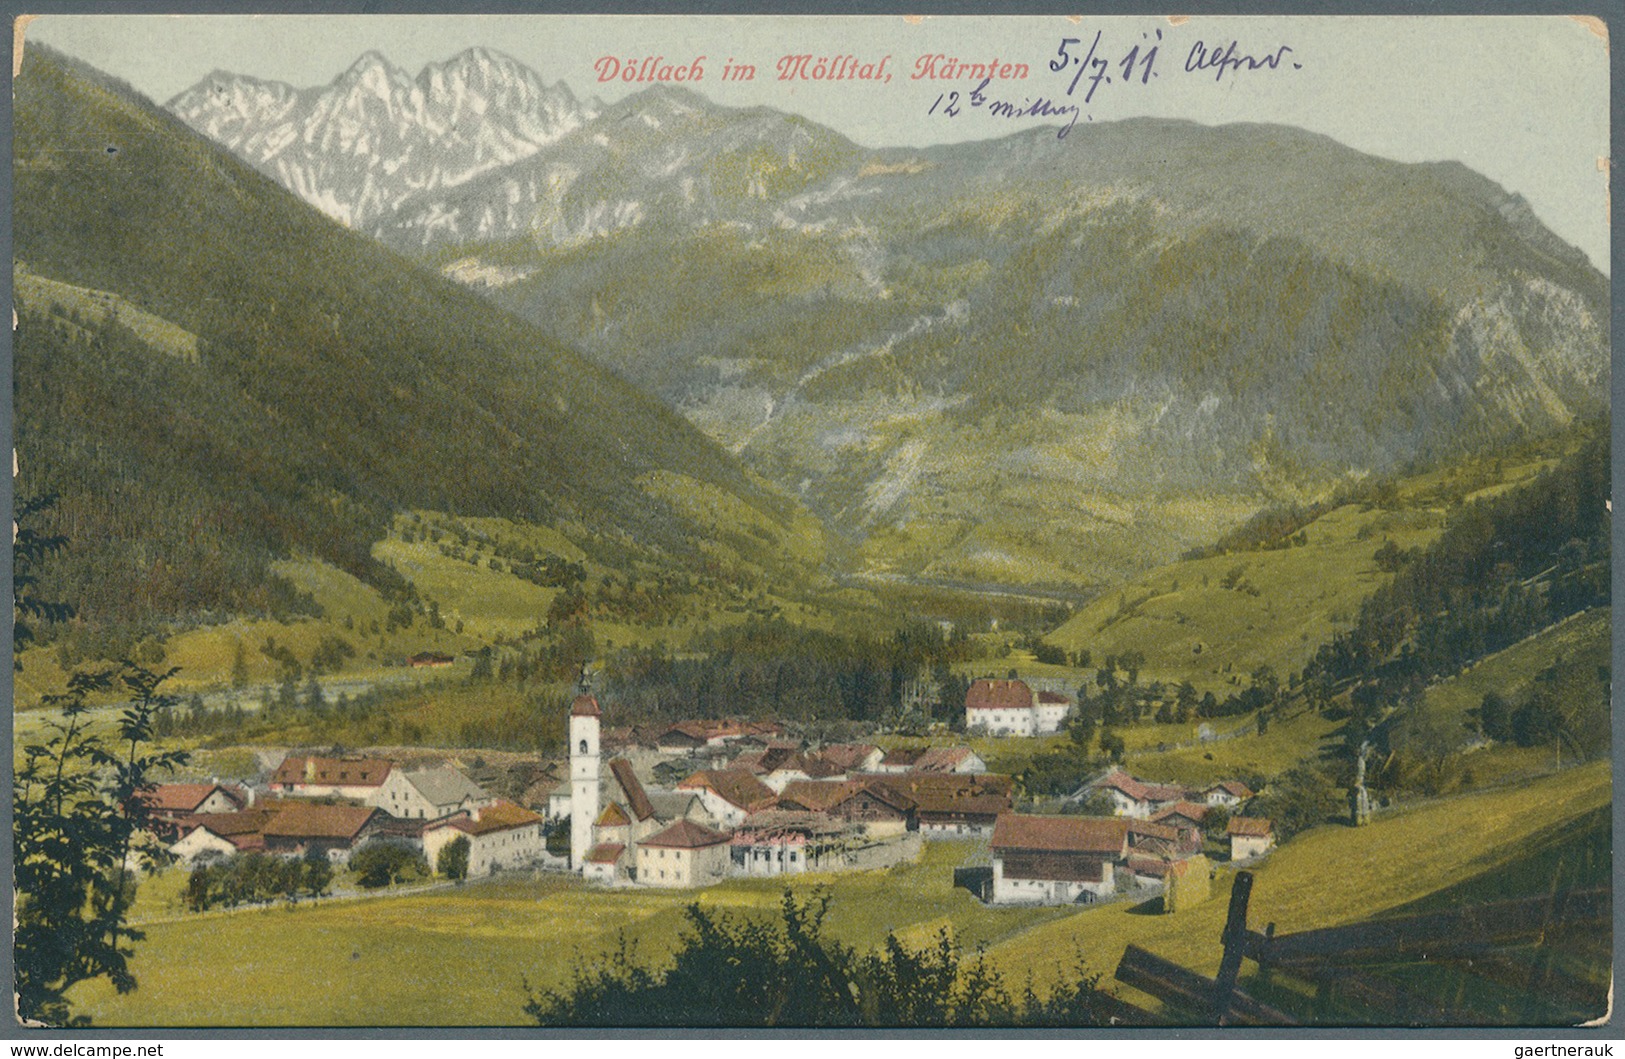 Ansichtskarten: Österreich: TIROL / KÄRNTEN. Alpenerlebnis der Superlative! Der höchste Berg und der